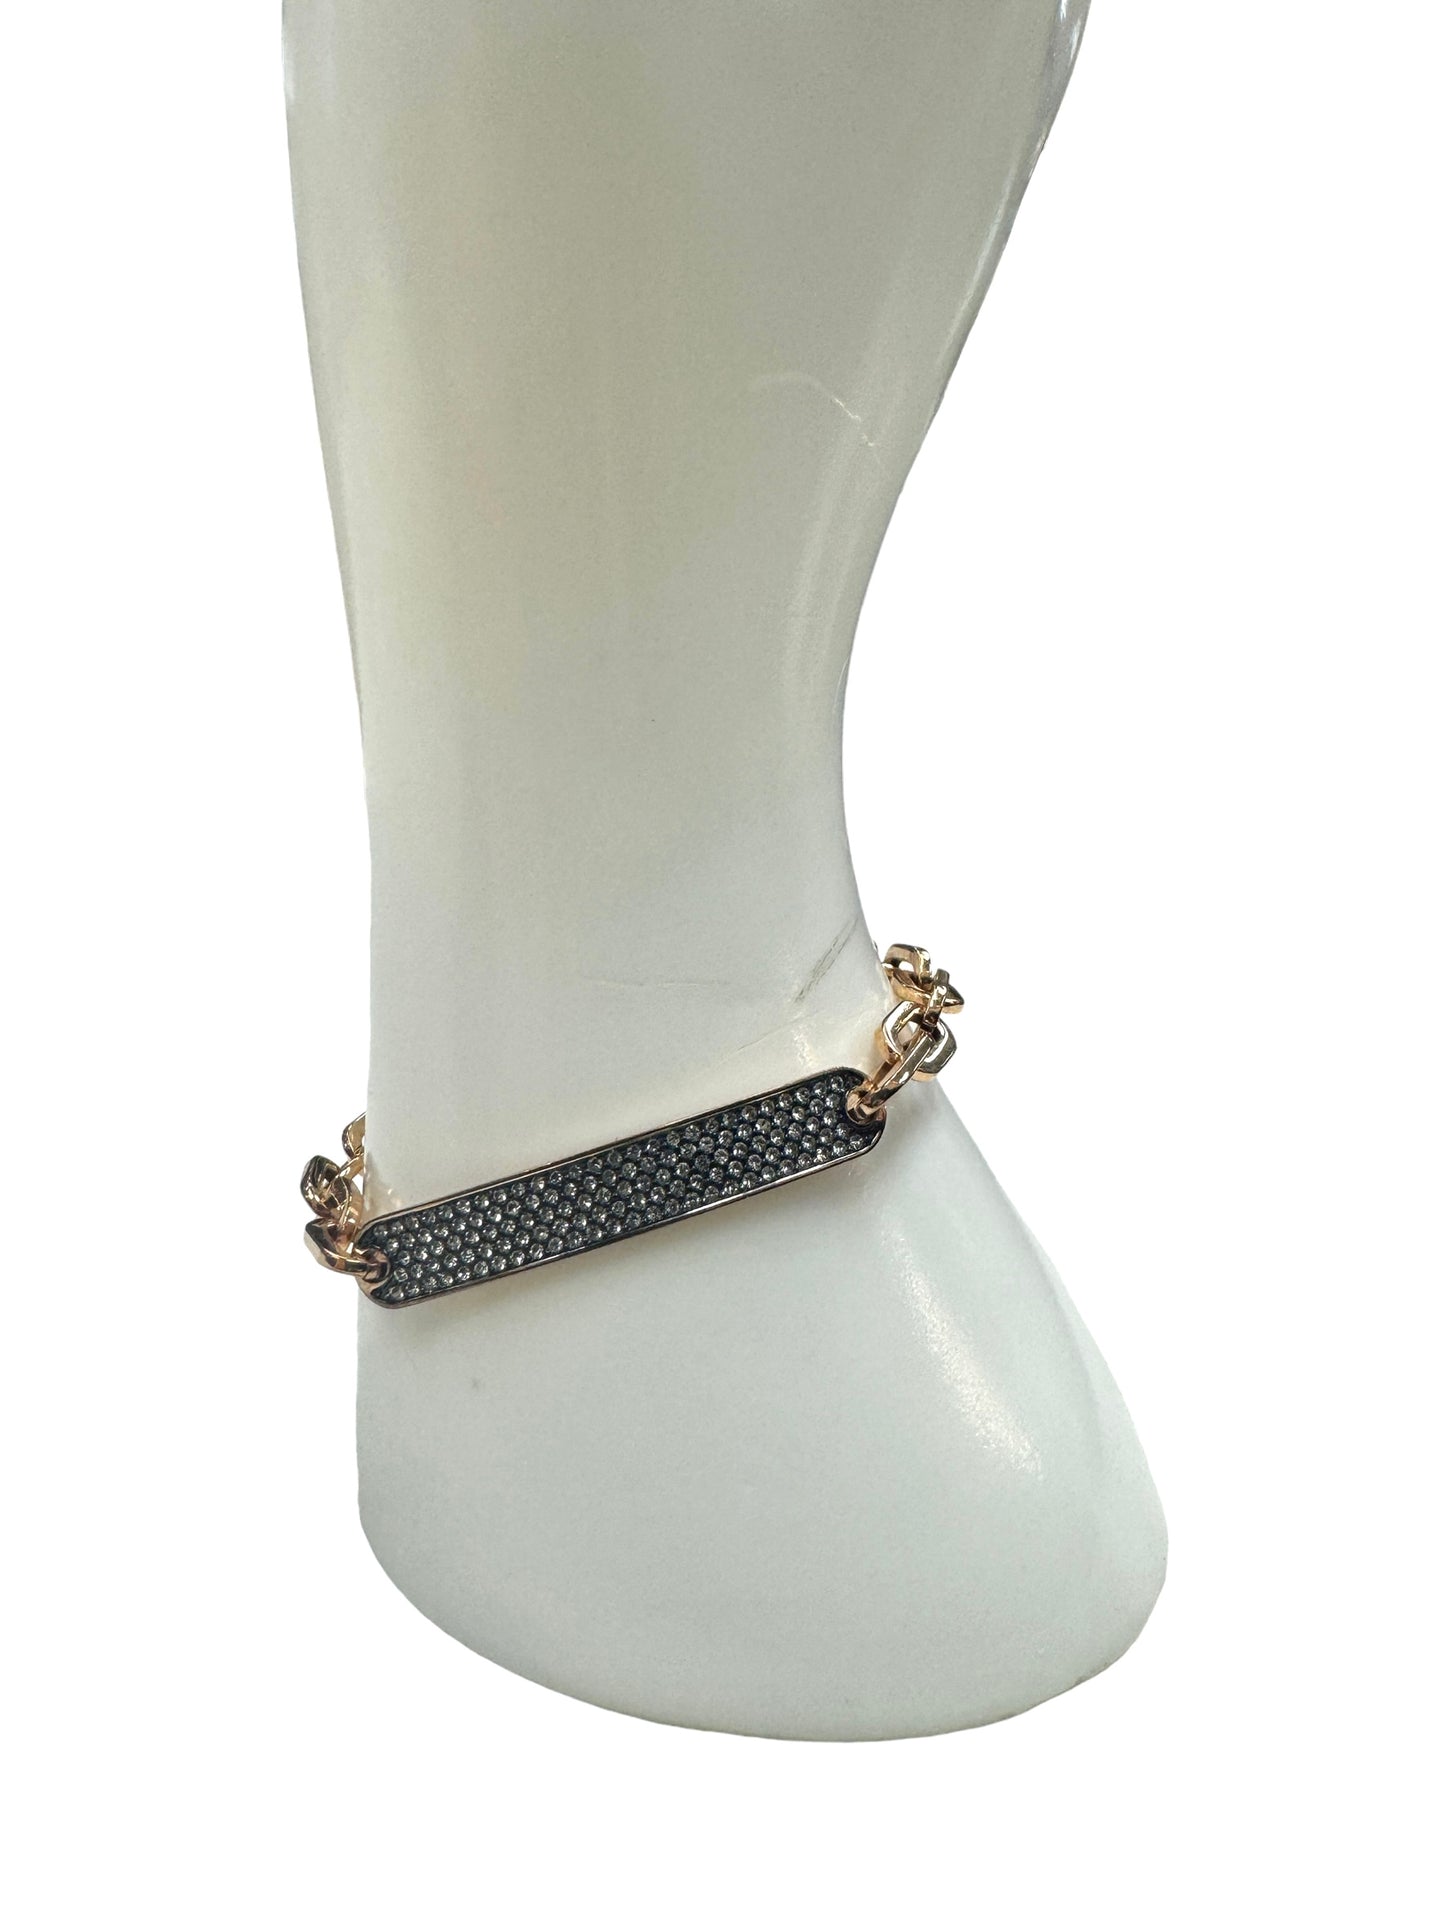 Bracelet Designer By Michael Kors